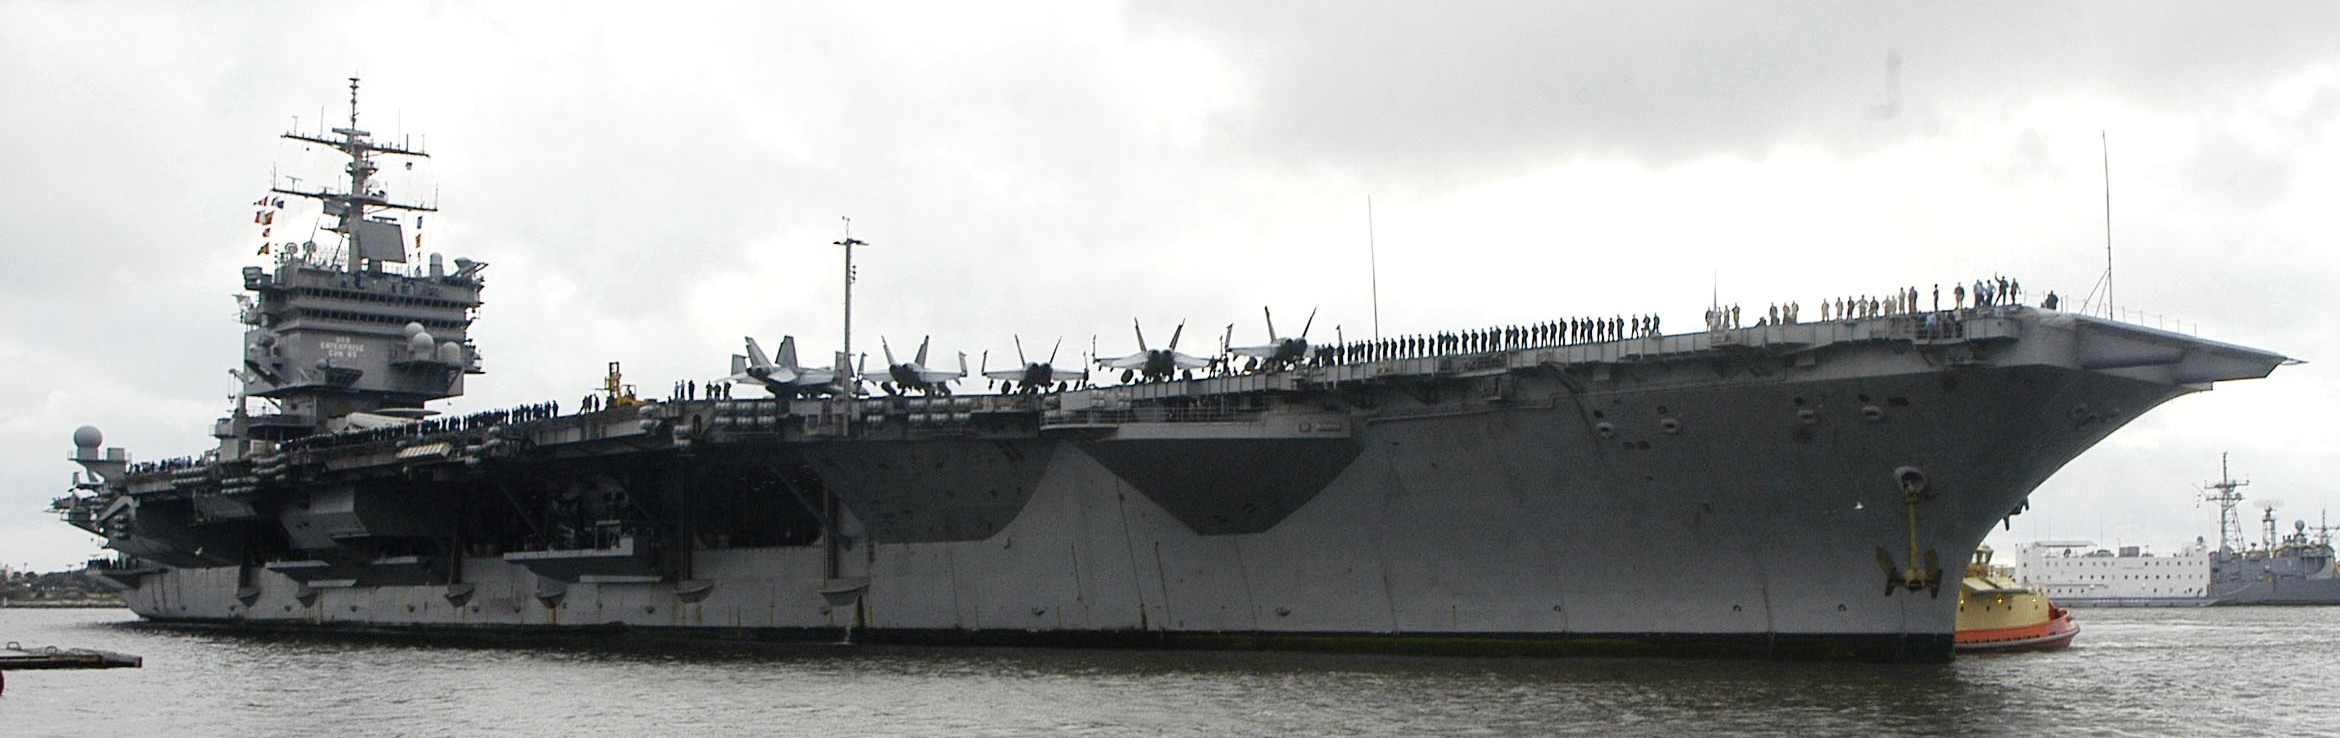 cvn-65 uss enterprise aircraft carrier us navy mayport florida 36